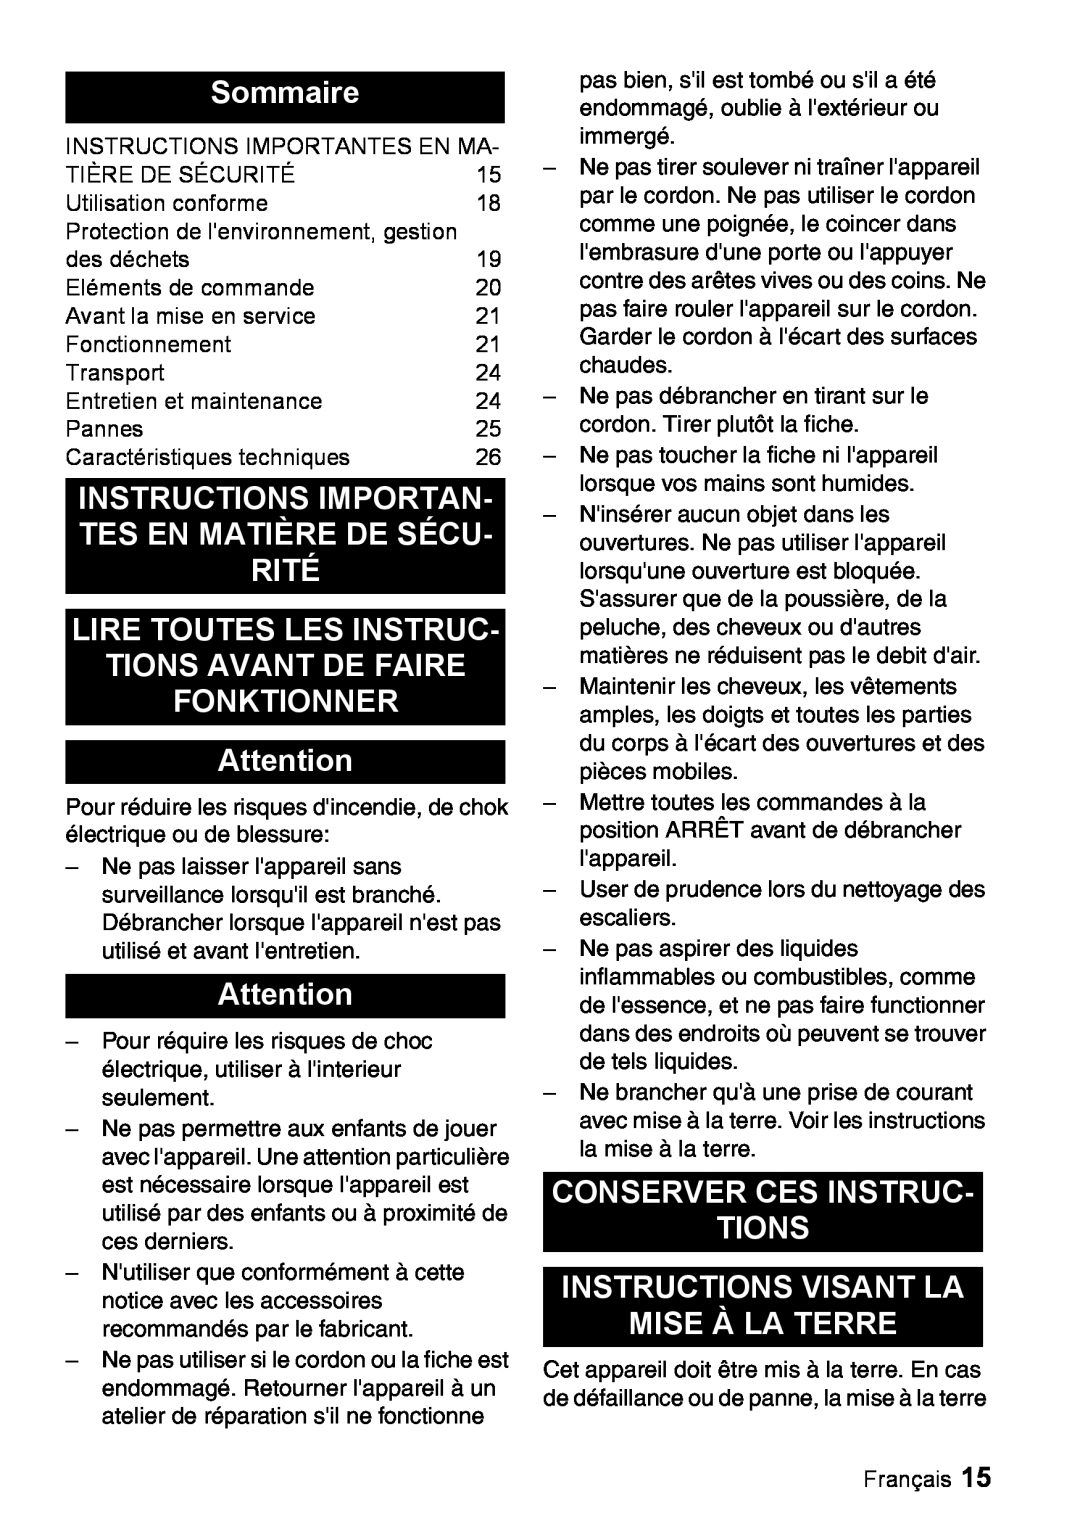 Windsor 16 manual Sommaire, Lire Toutes Les Instruc Tions Avant De Faire, Fonktionner, Conserver Ces Instruc Tions 